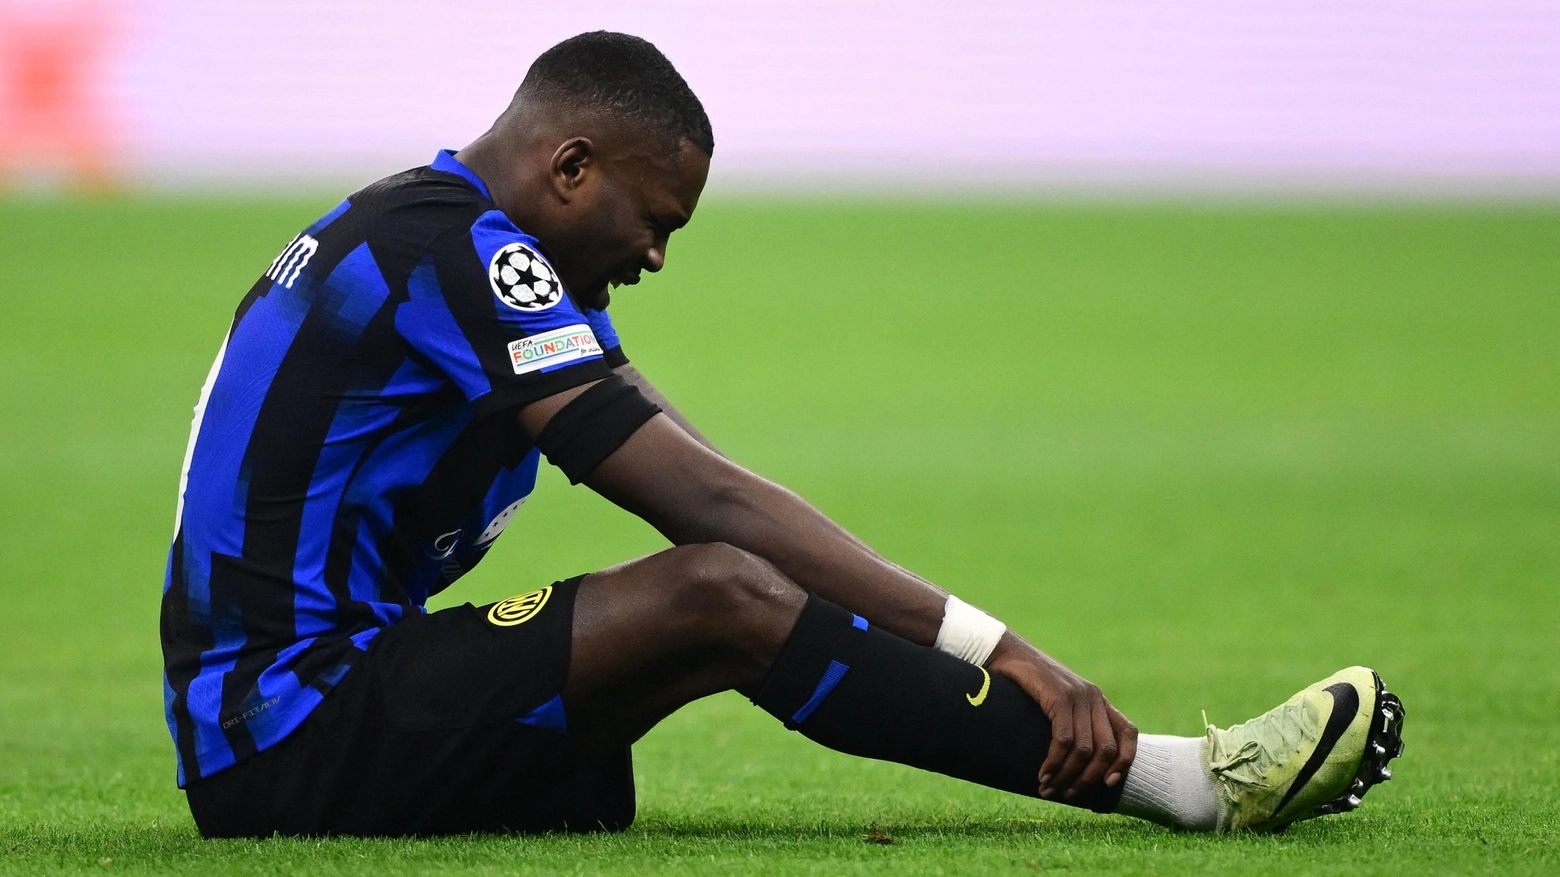 Nulla di grave per l’attaccante dell’Inter che dovrà comunque riposare per tornare completamente in forma. Atteso il turnover al Via del Mare